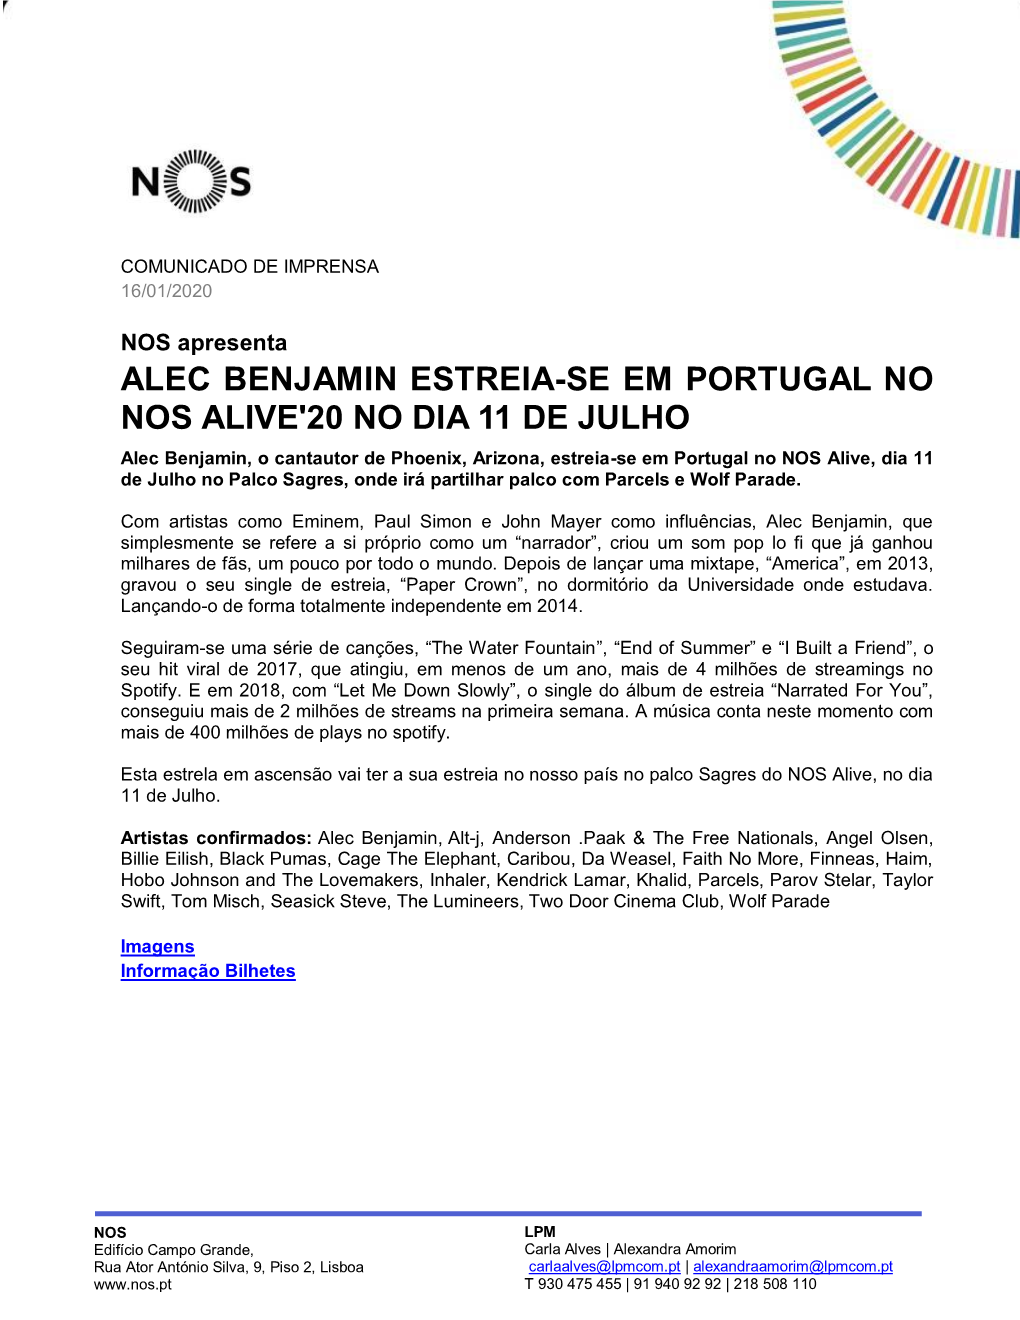 Alec Benjamin Estreia-Se Em Portugal No Nos Alive'20 No